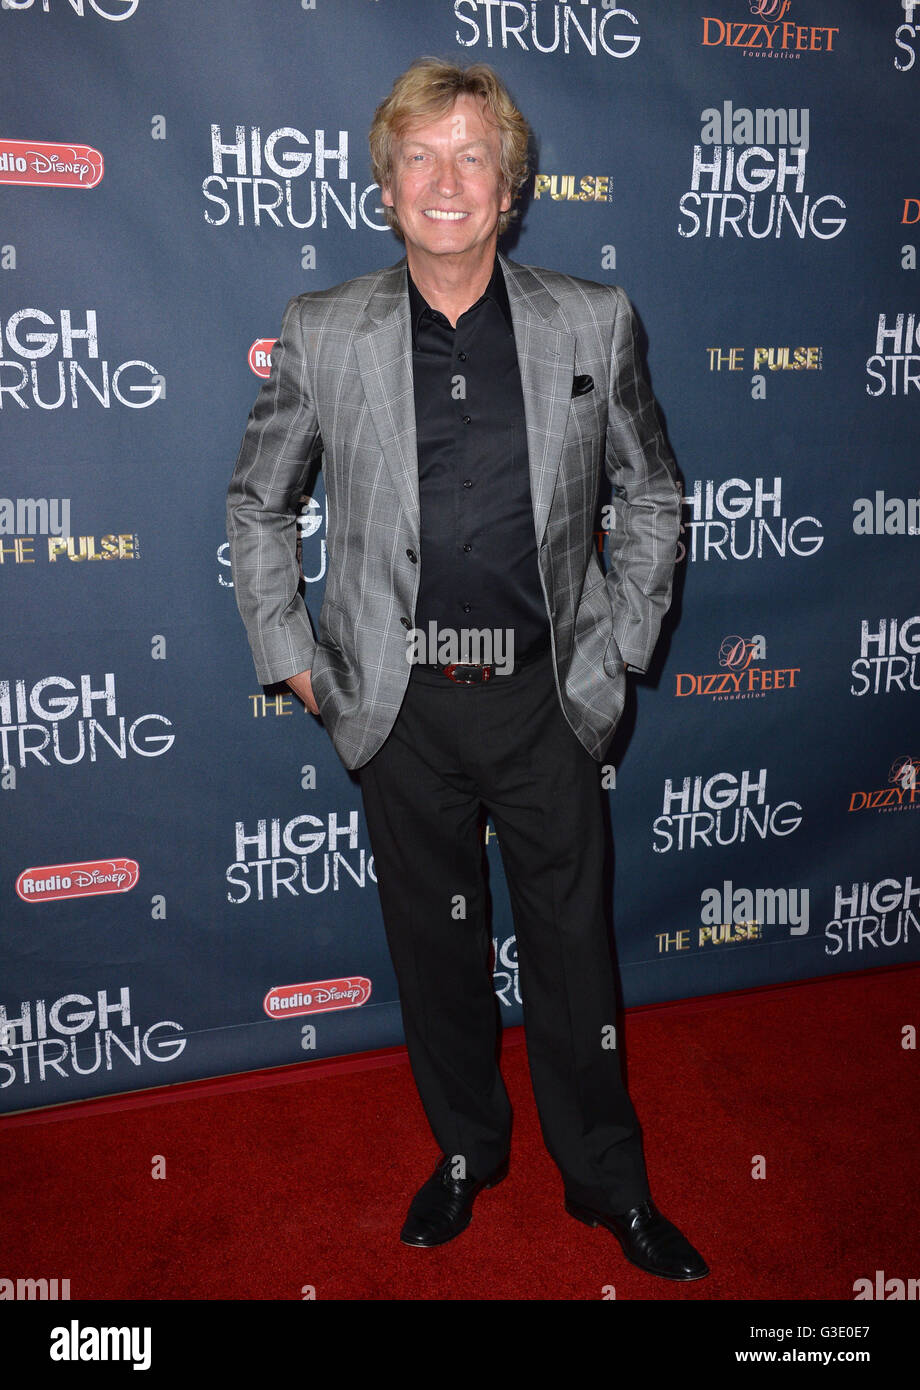 LOS ANGELES, CA - 29. März 2016: Nigel Lythgoe bei der Premiere für "hohe aufgereiht' TCL Chinese 6 Theater, Hollywood. Stockfoto